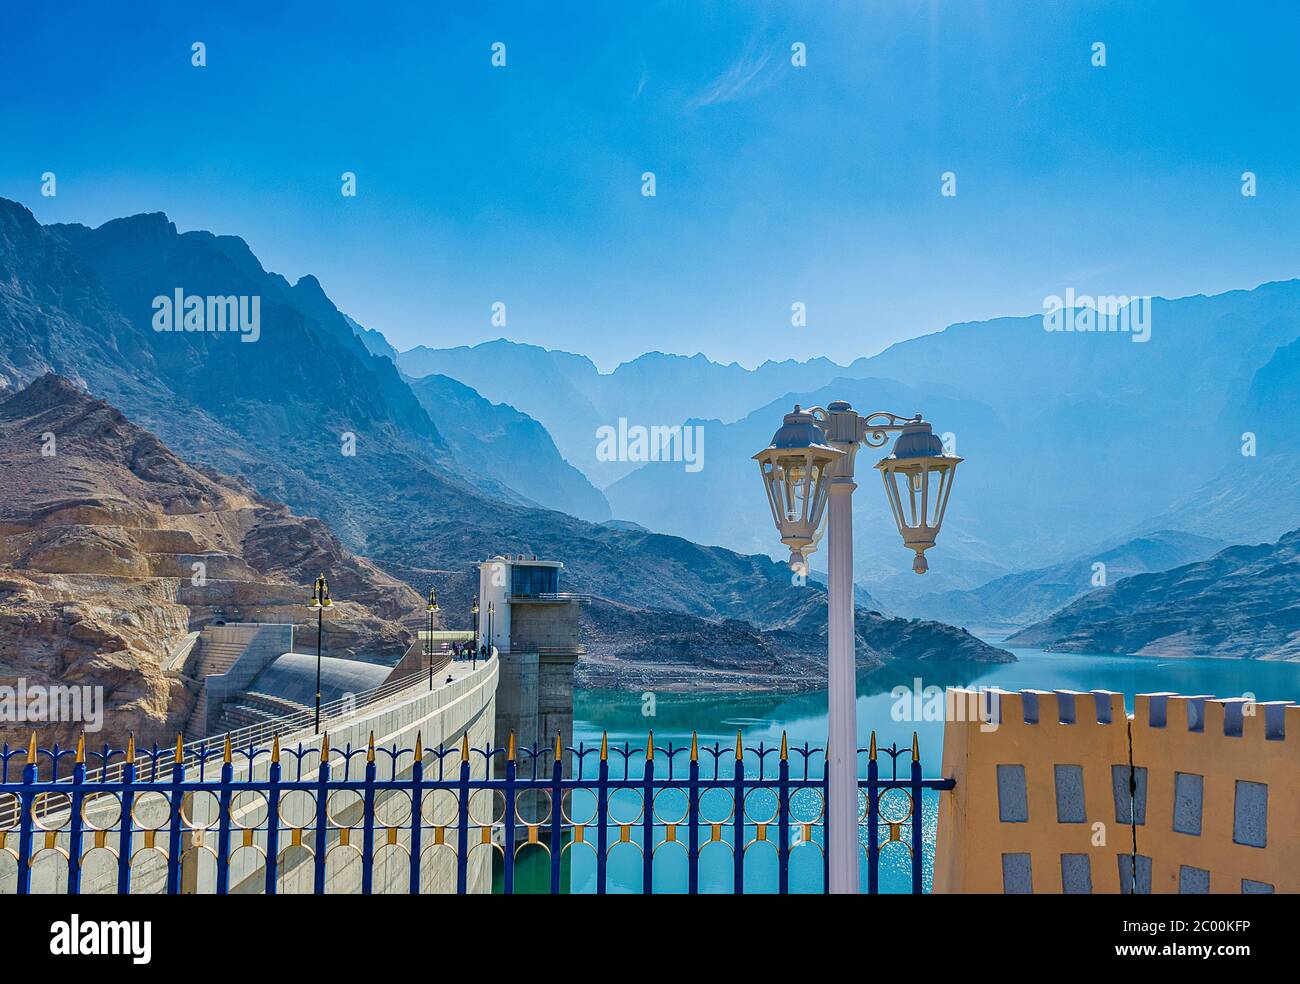 Schöne Berge in der Ferne mit einem Lichtmast im Vordergrund. Vom Quriyat Dam Gelände, Muscat, Oman. Stockfoto